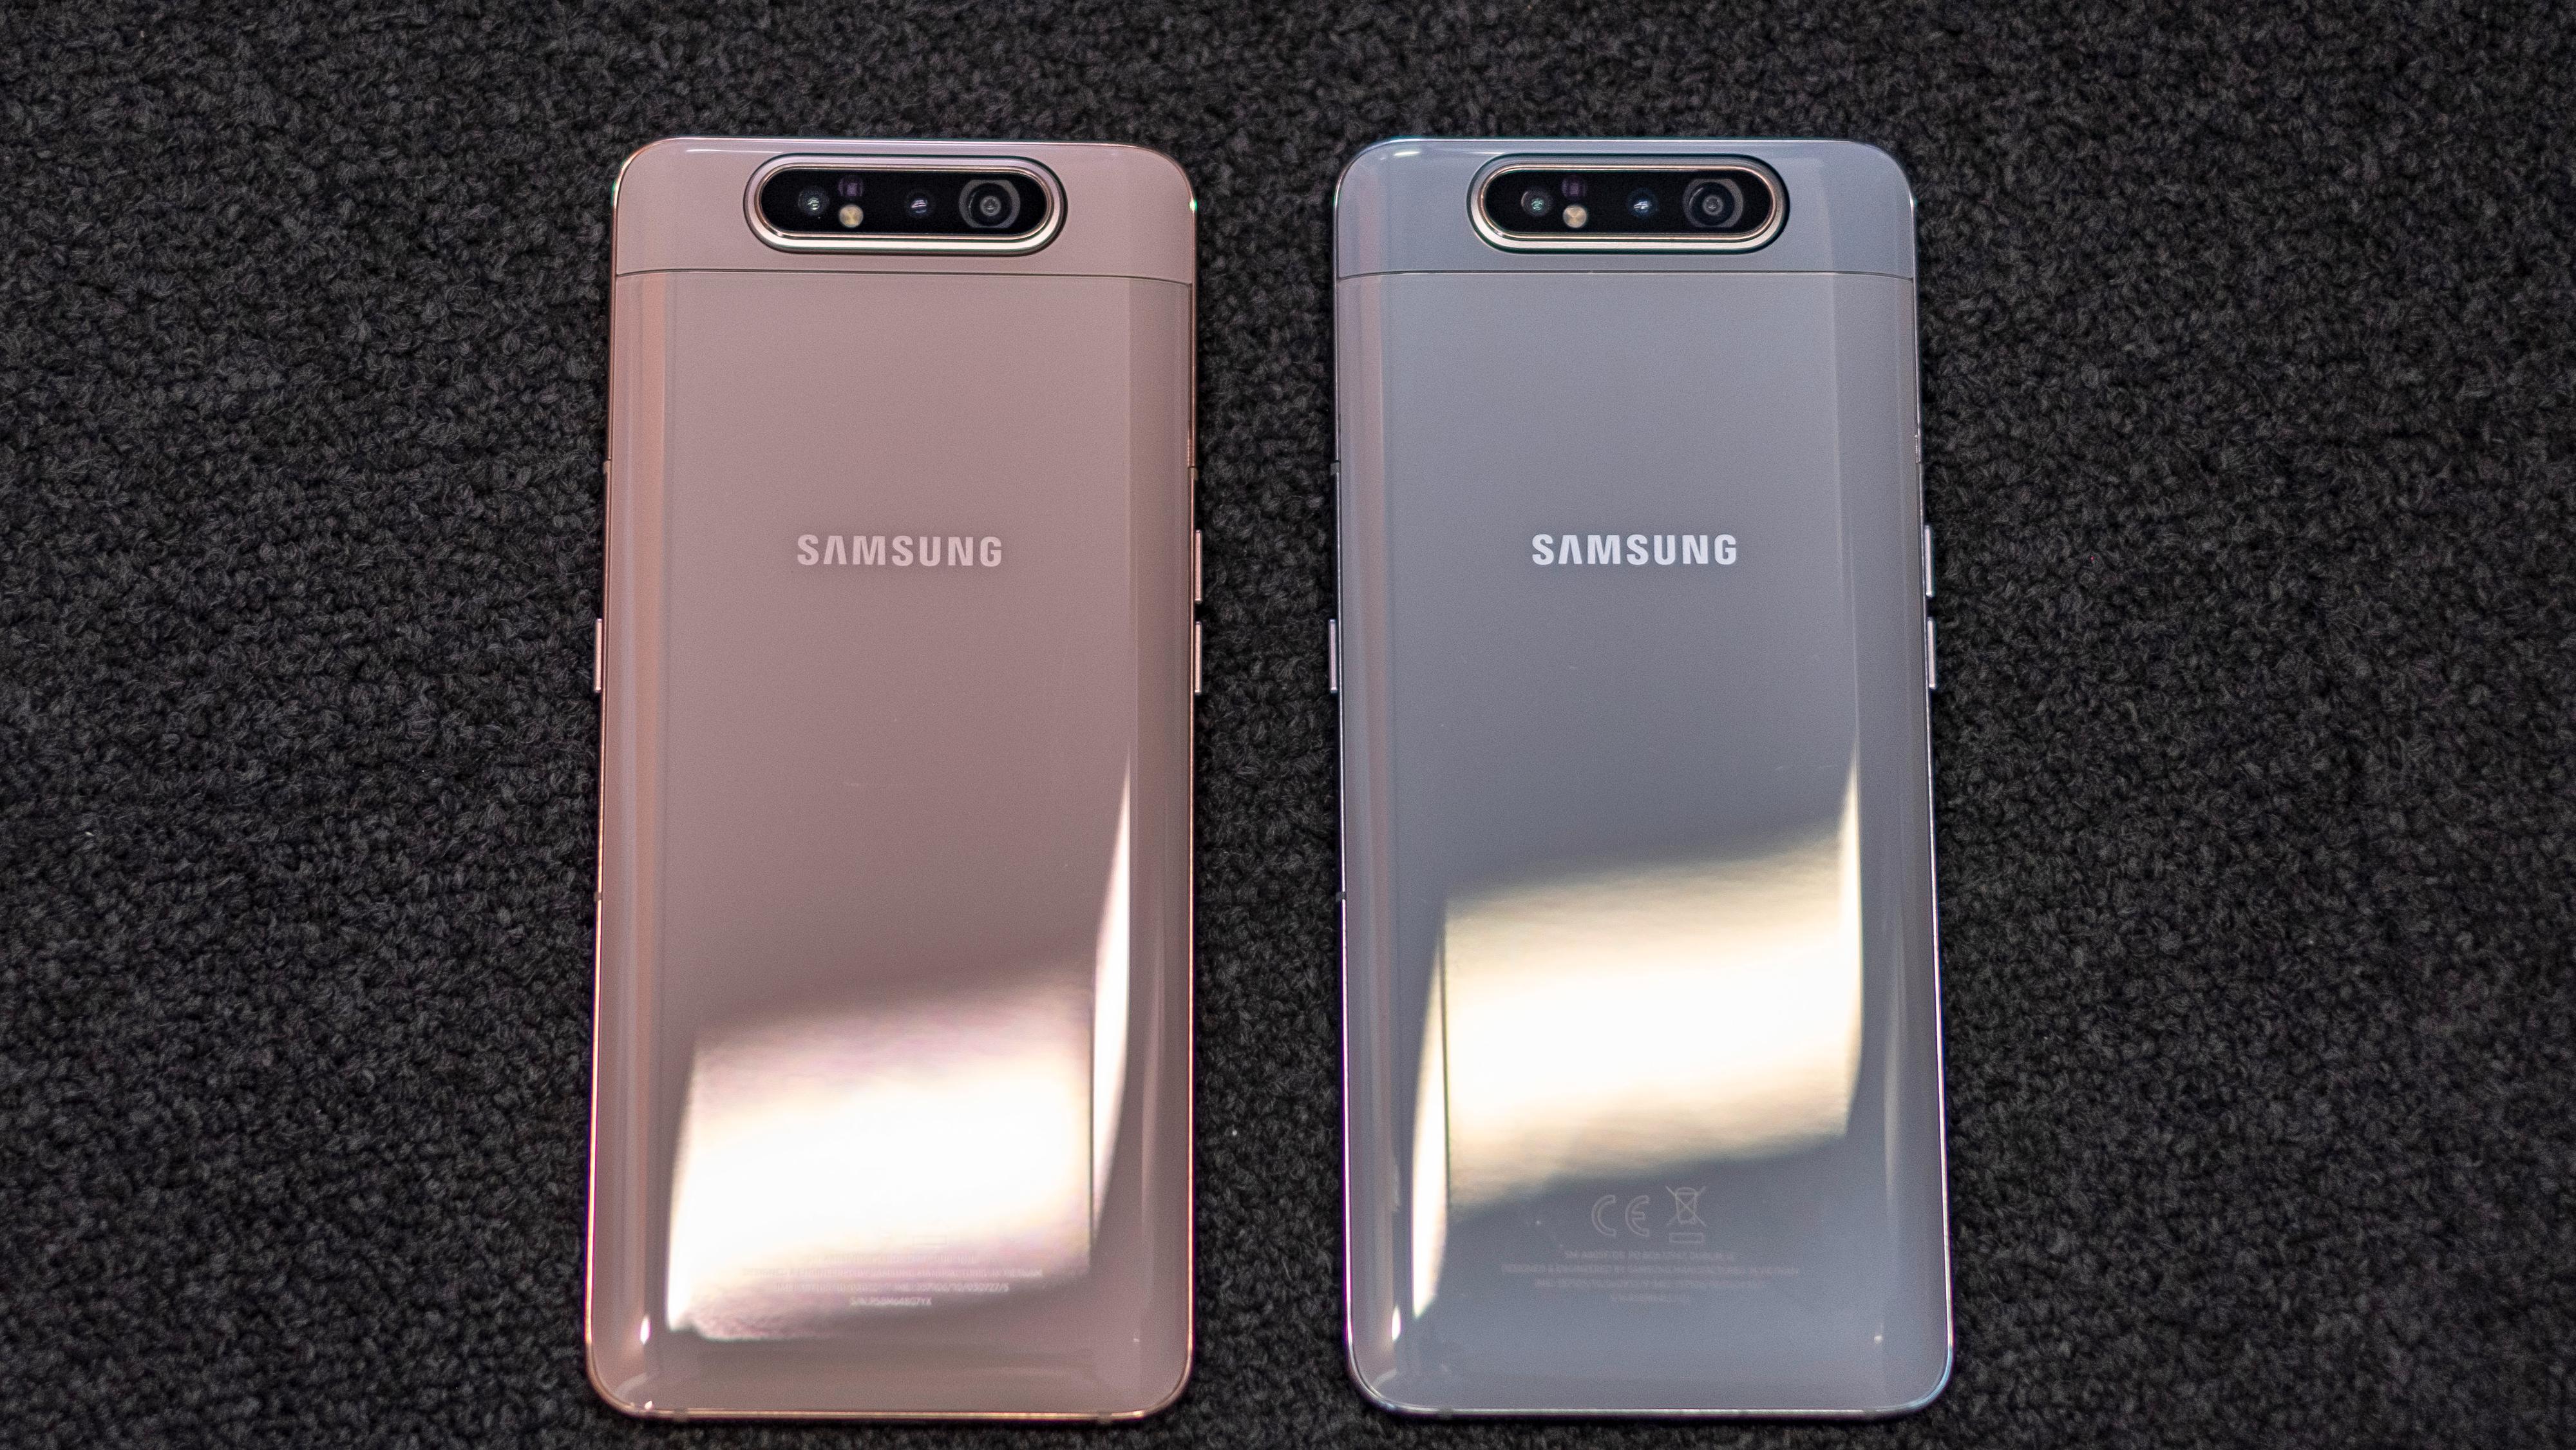 Galaxy A80 finnes i varianter med rosa glass og gullkanter eller hvitt glass og sølvfargede kanter. En svart versjon finnes også.